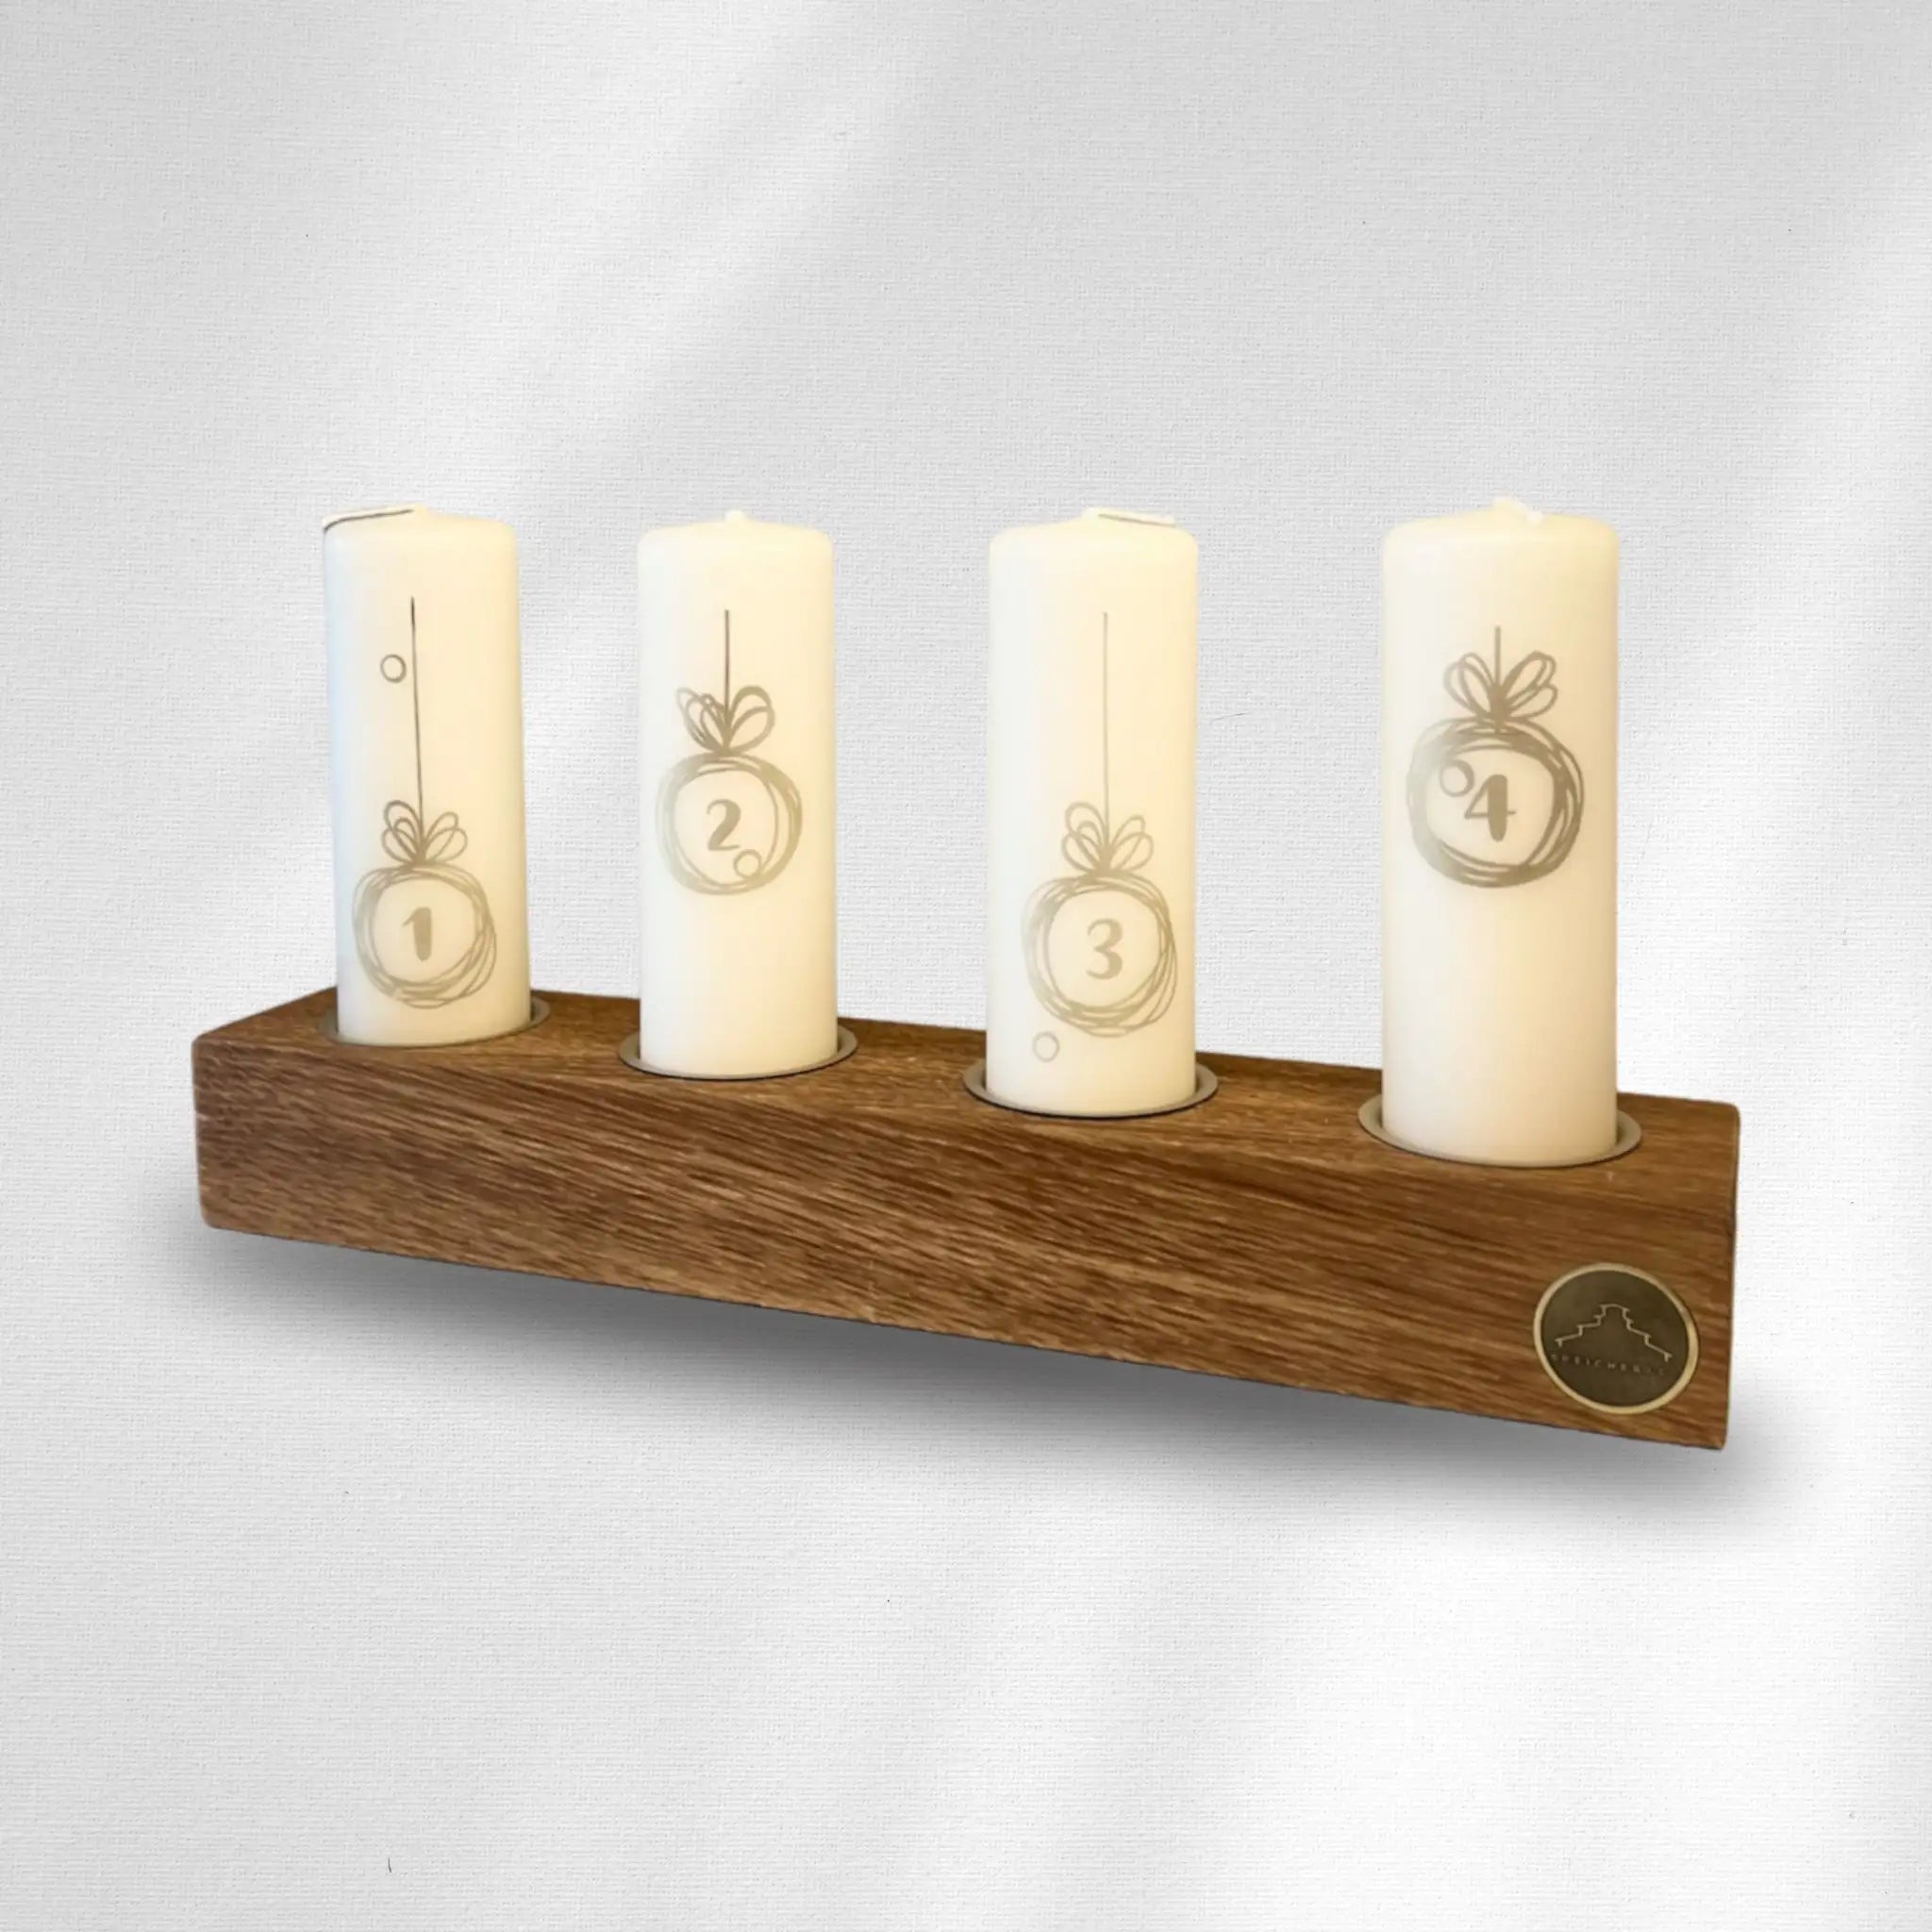 Holz-Kerzenständer: Zeitlose Eleganz für dein Zuhause. Meisterhaft gefertigt, hochwertiges Holz, perfekte Harmonie.